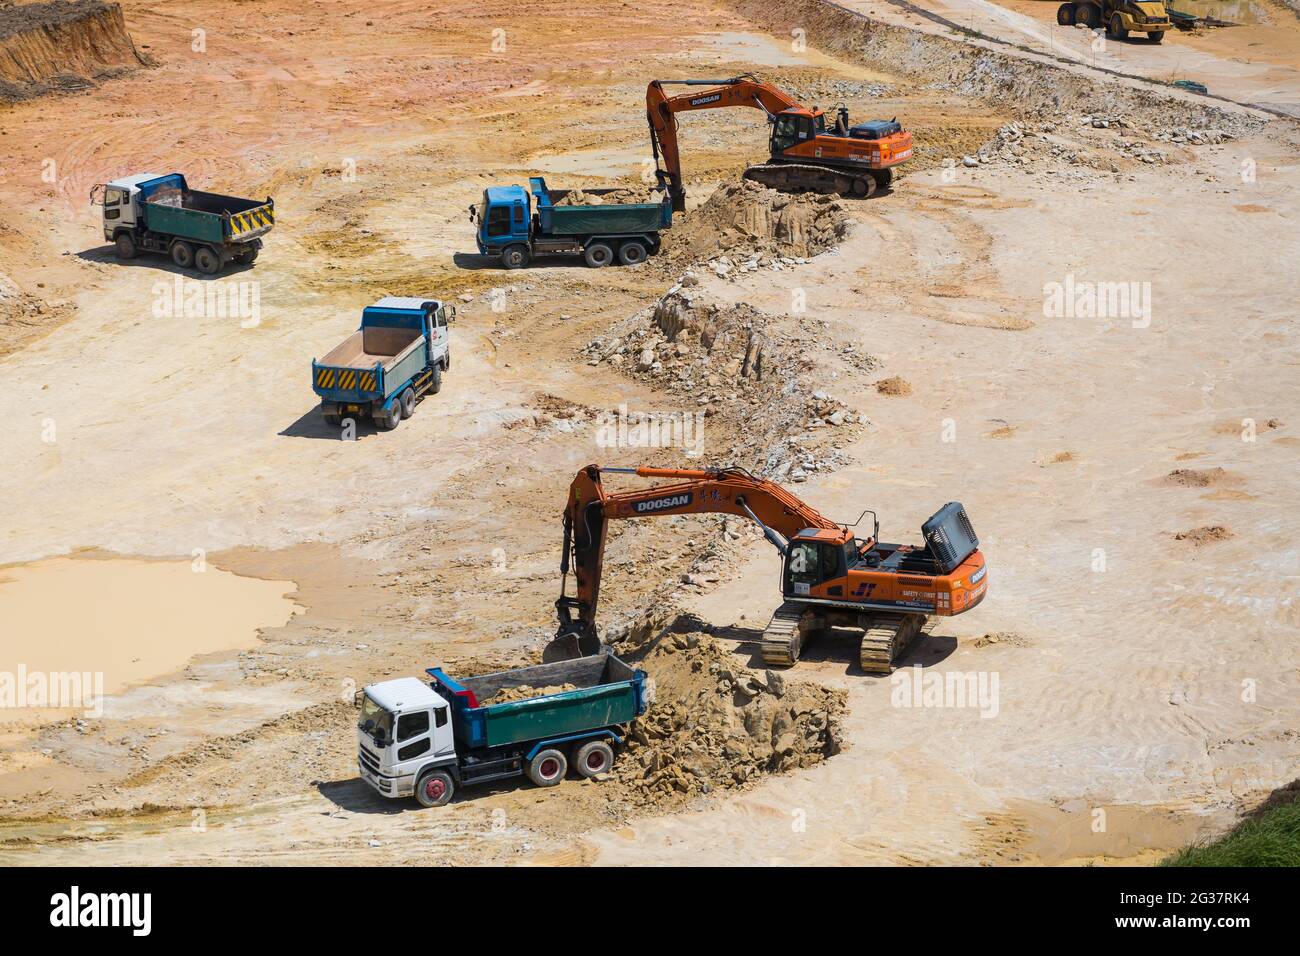 Les pelles hydrauliques sont synchronisées lors de l'excavation du sol et de la mise sur les tombereaux lourds. Banque D'Images